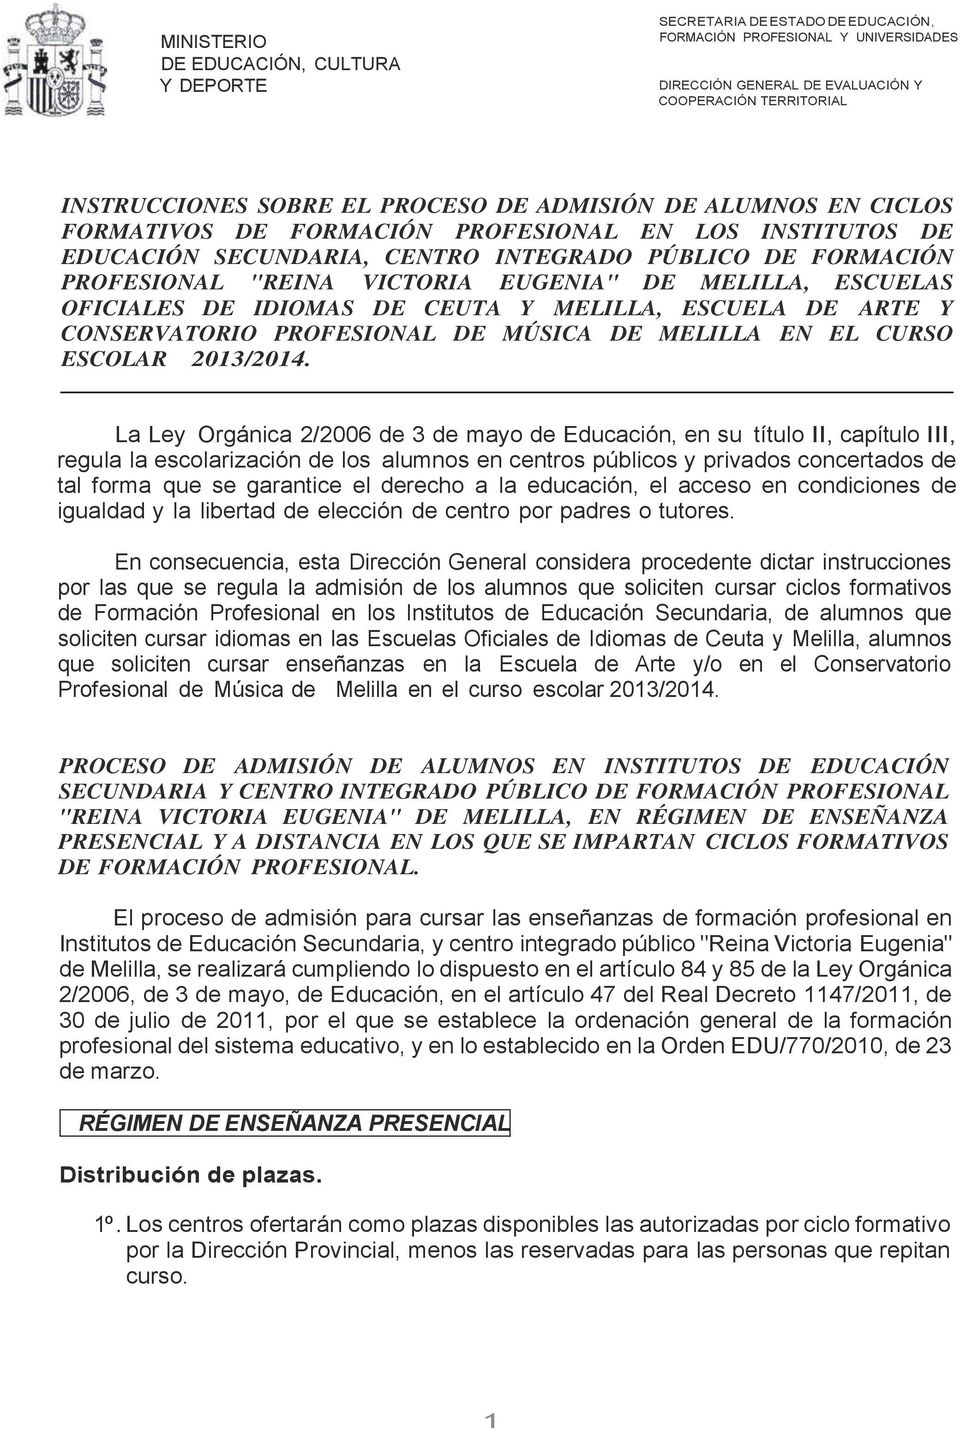 La Ley Orgánica 2/2006 de 3 de mayo de Educación, en su título II, capítulo III, regula la escolarización de los alumnos en centros públicos y privados concertados de tal forma que se garantice el